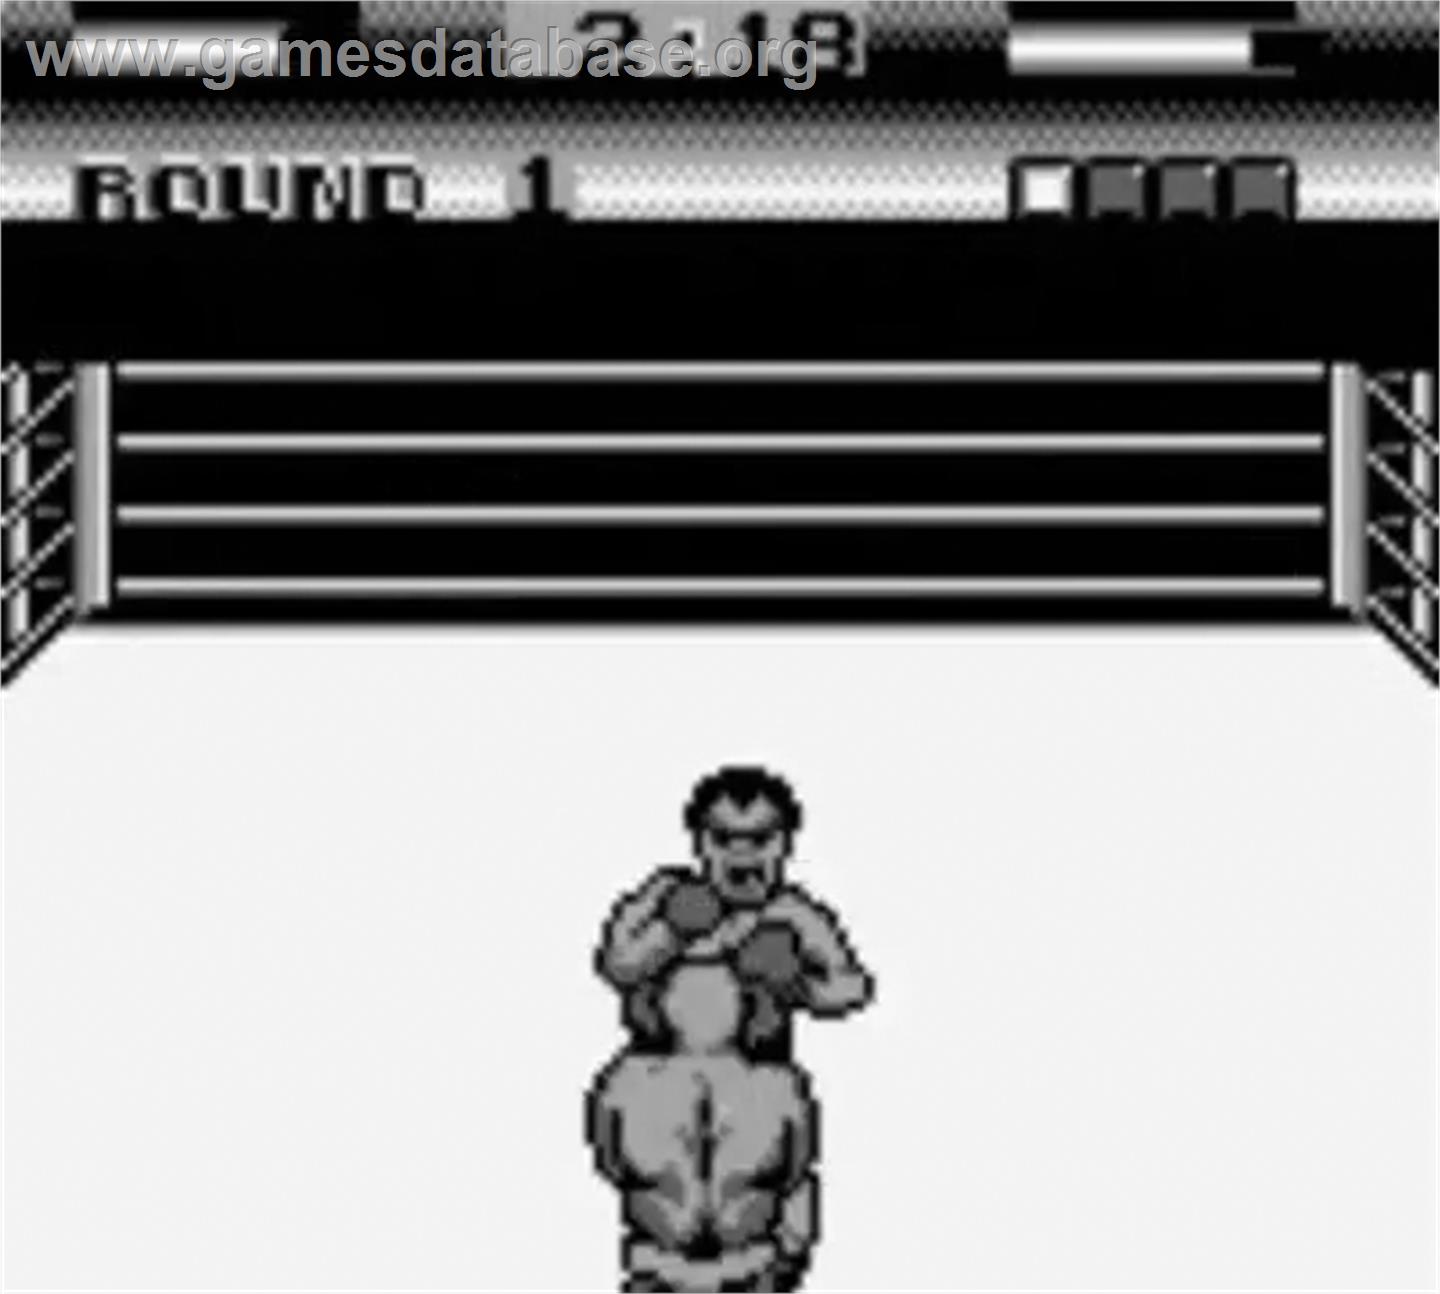 George Foreman's KO Boxing - Nintendo Game Boy - Artwork - In Game